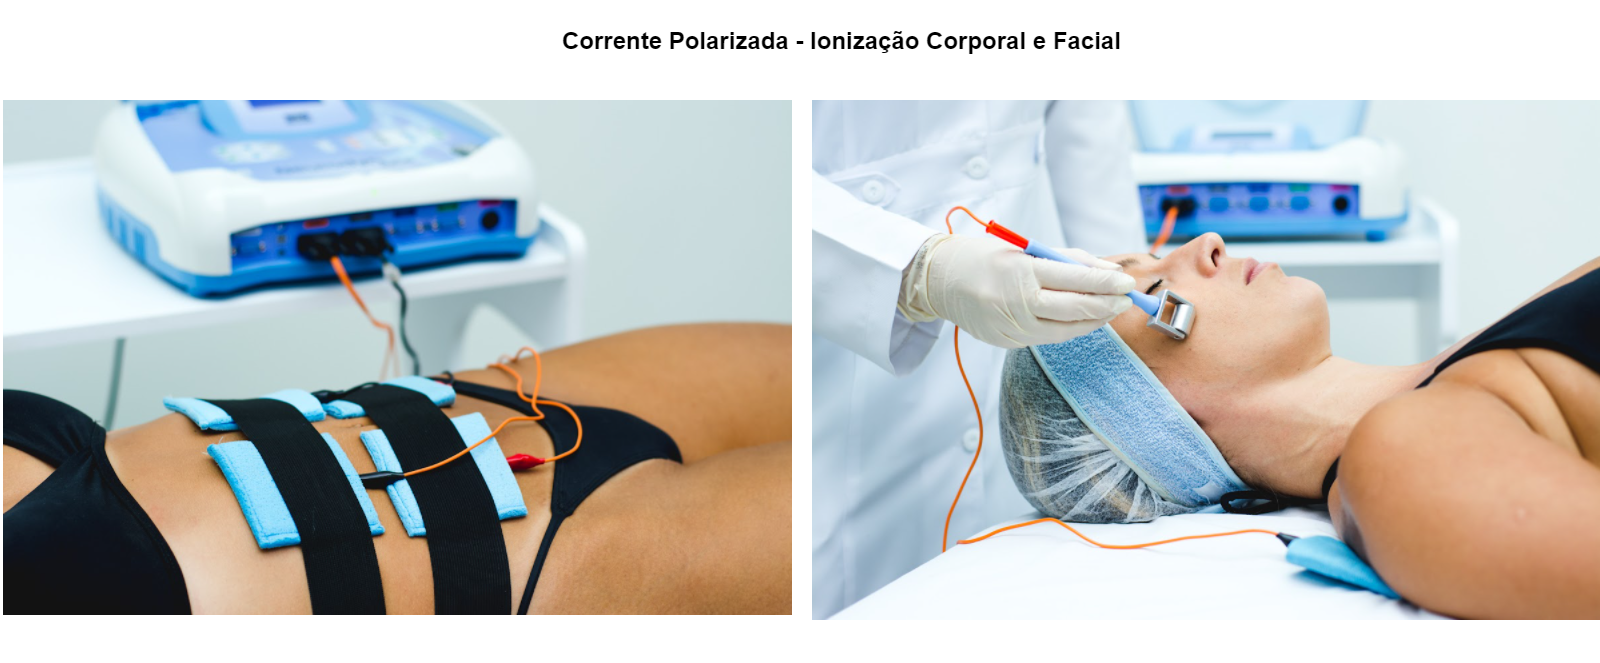 Corrente Polarizada - Ionização Corporal e Facial